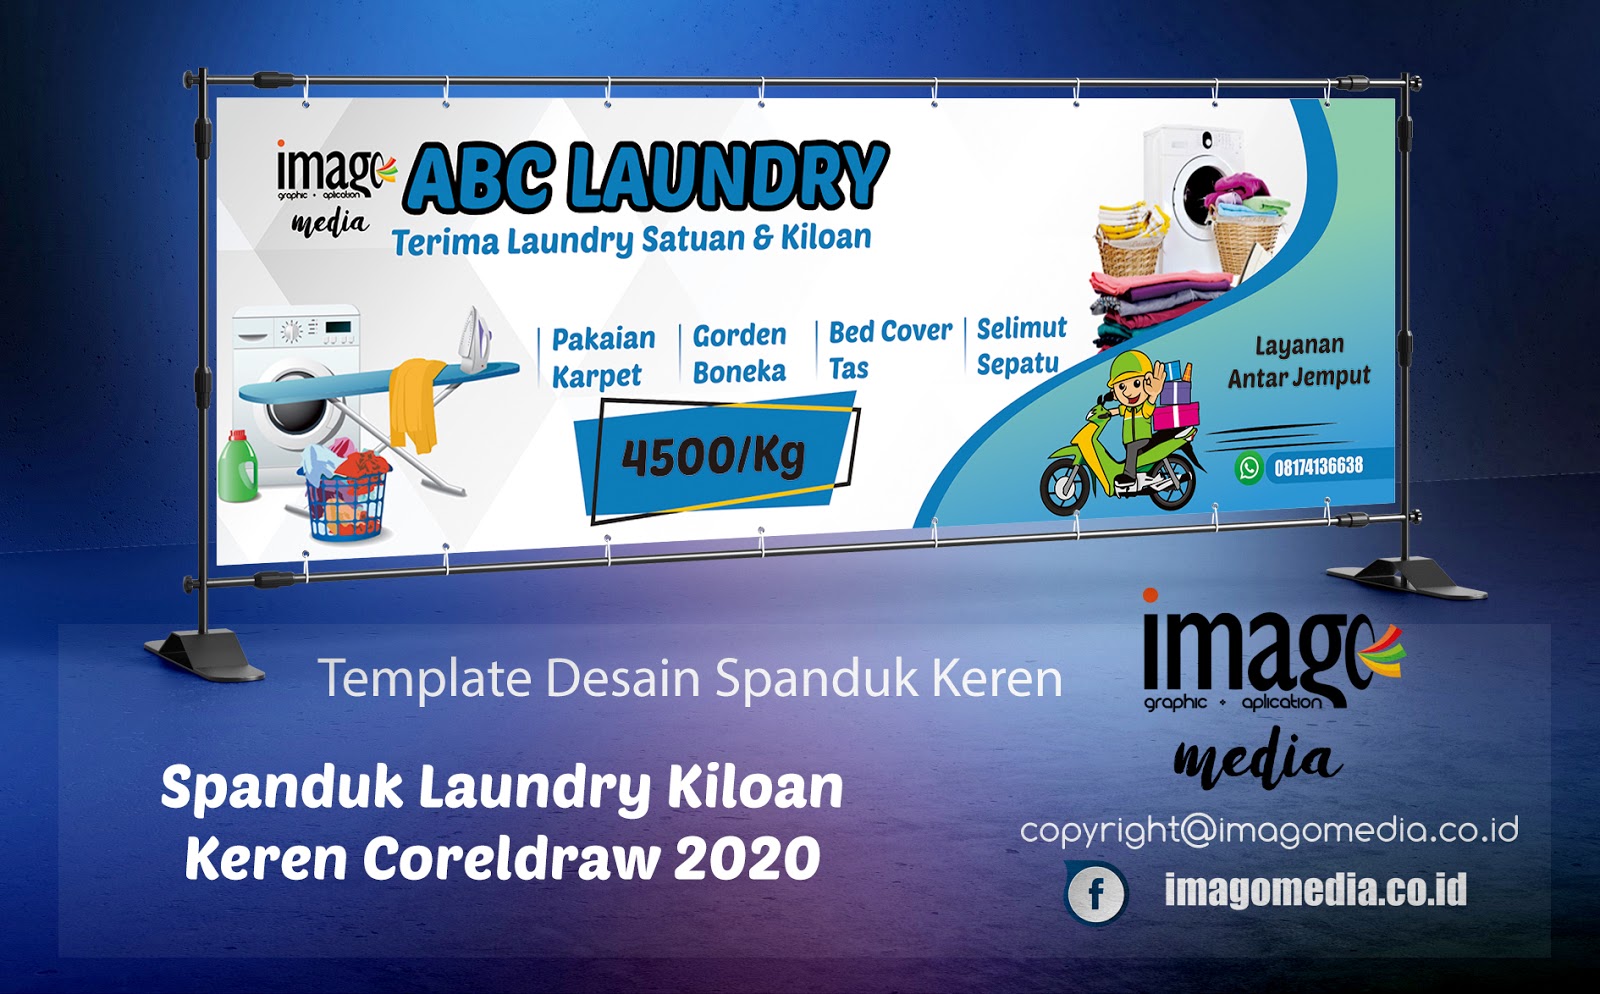  Desain Spanduk Laundry  Kiloan Keren Coreldraw 2021 Imago 